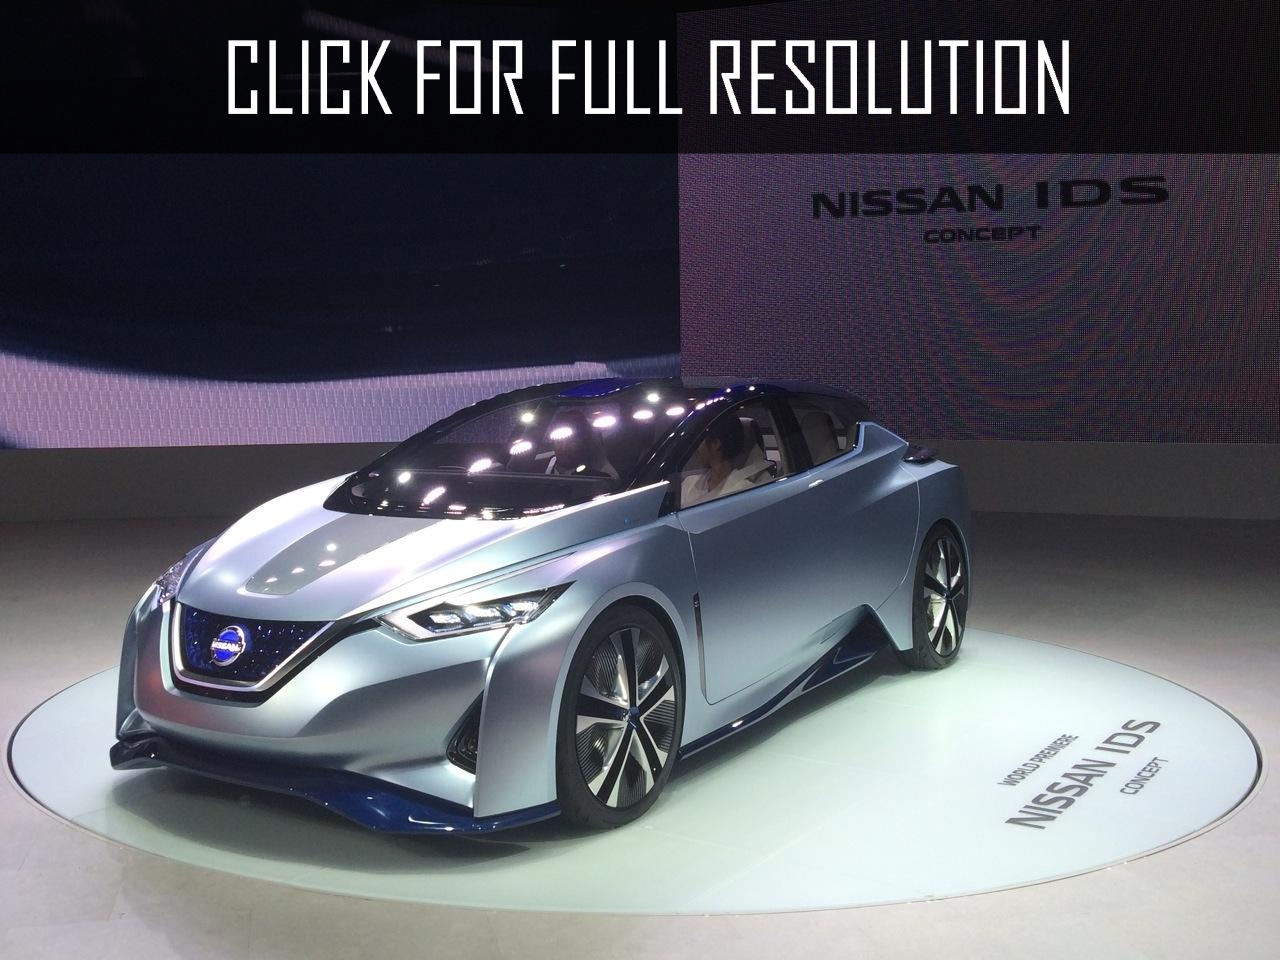 Nissan Ids Concept